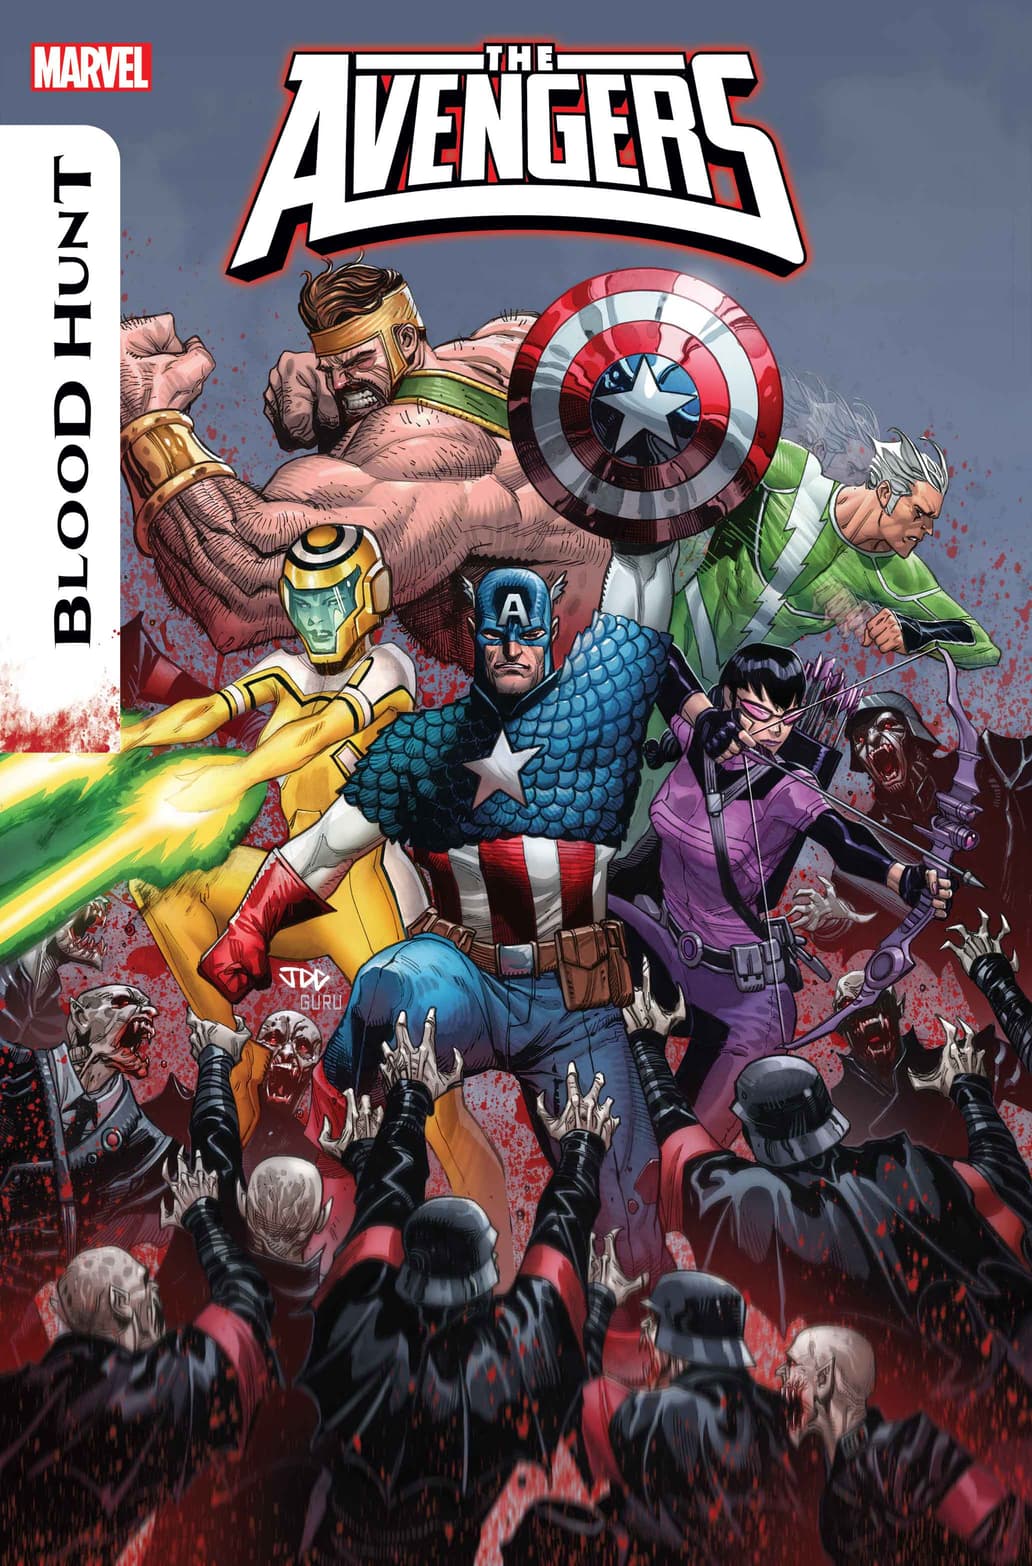 The Avengers #14 cover art